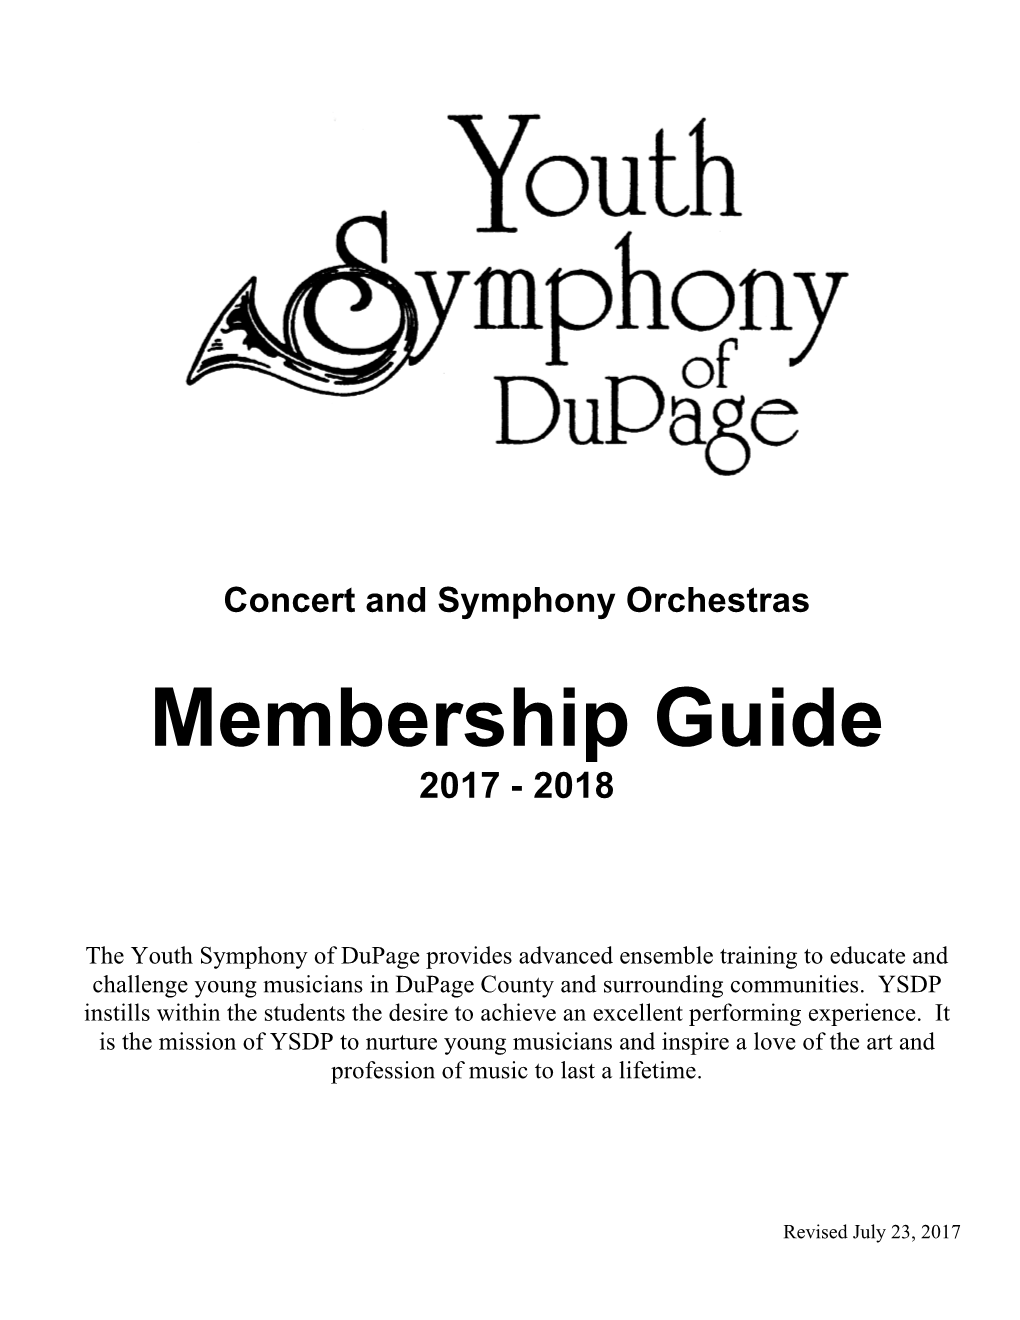 Membership Guide 2017 - 2018